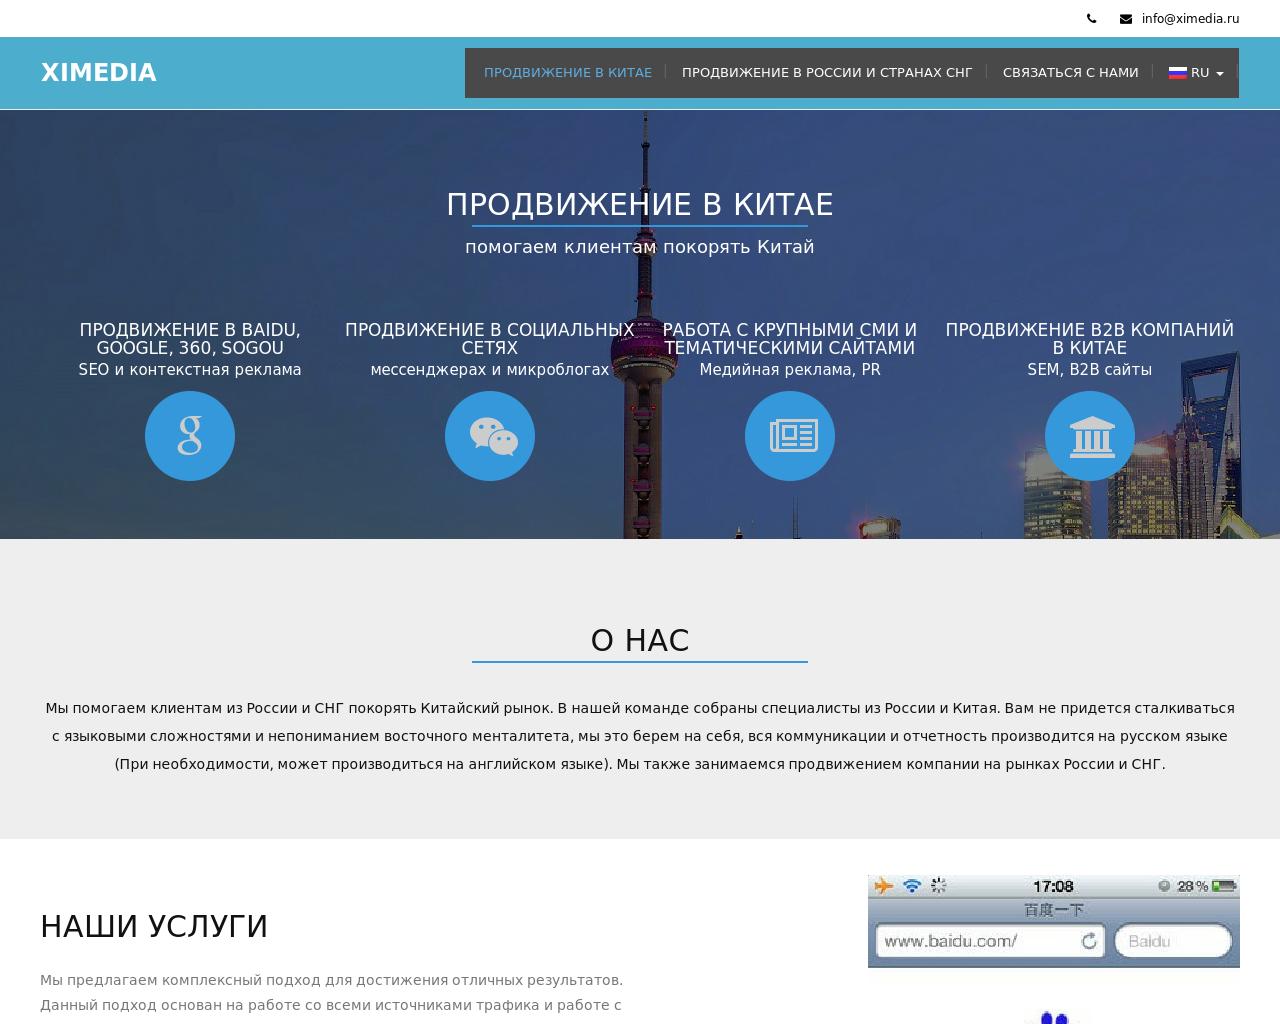 Изображение сайта ximedia.ru в разрешении 1280x1024